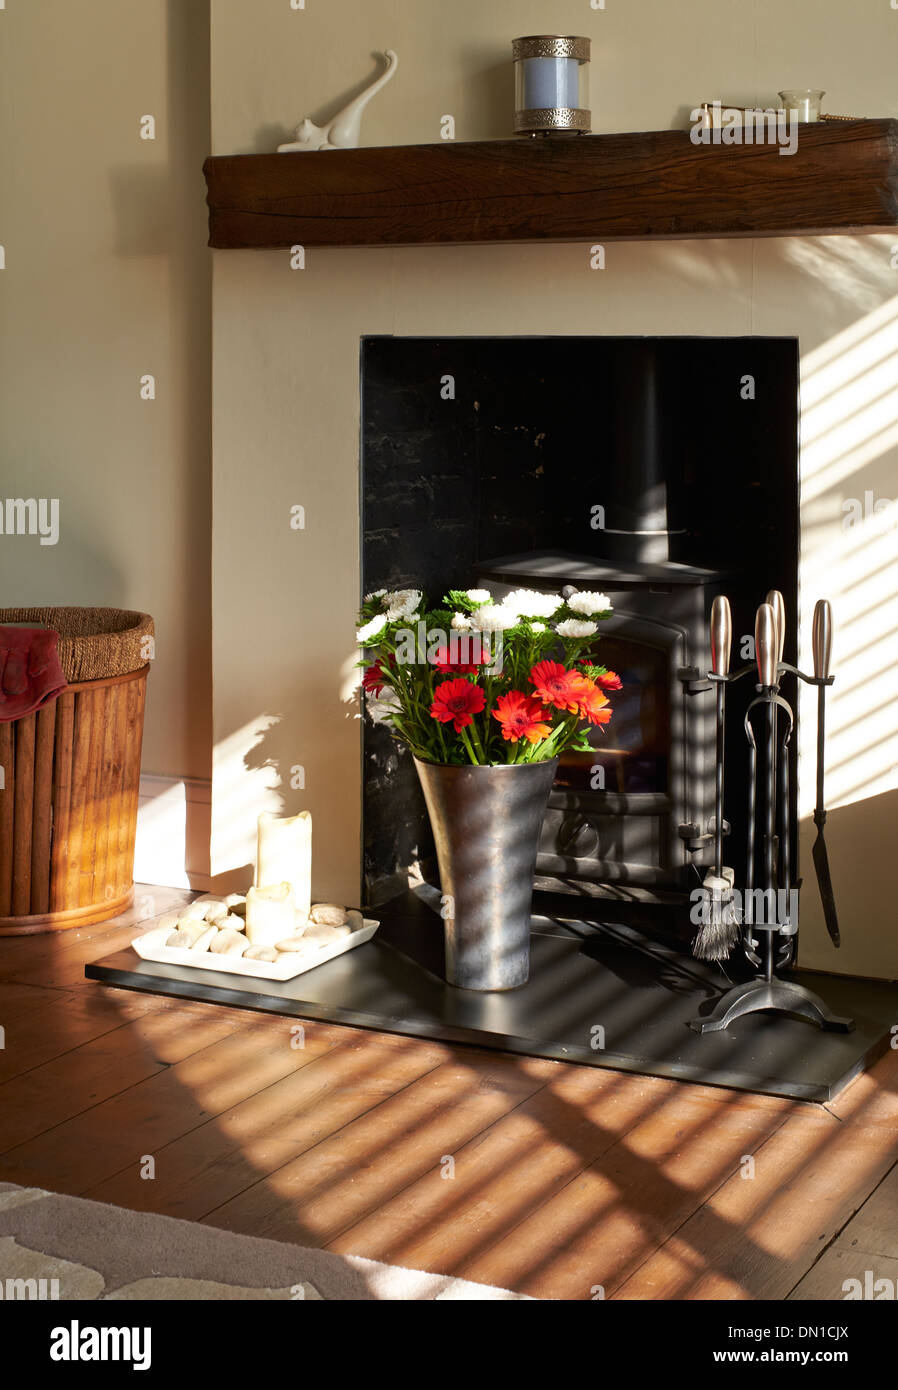 Sonnenschein leuchtenden Blumen auf einer Schiefertafel Herd in einem Wohnzimmer. Stockfoto